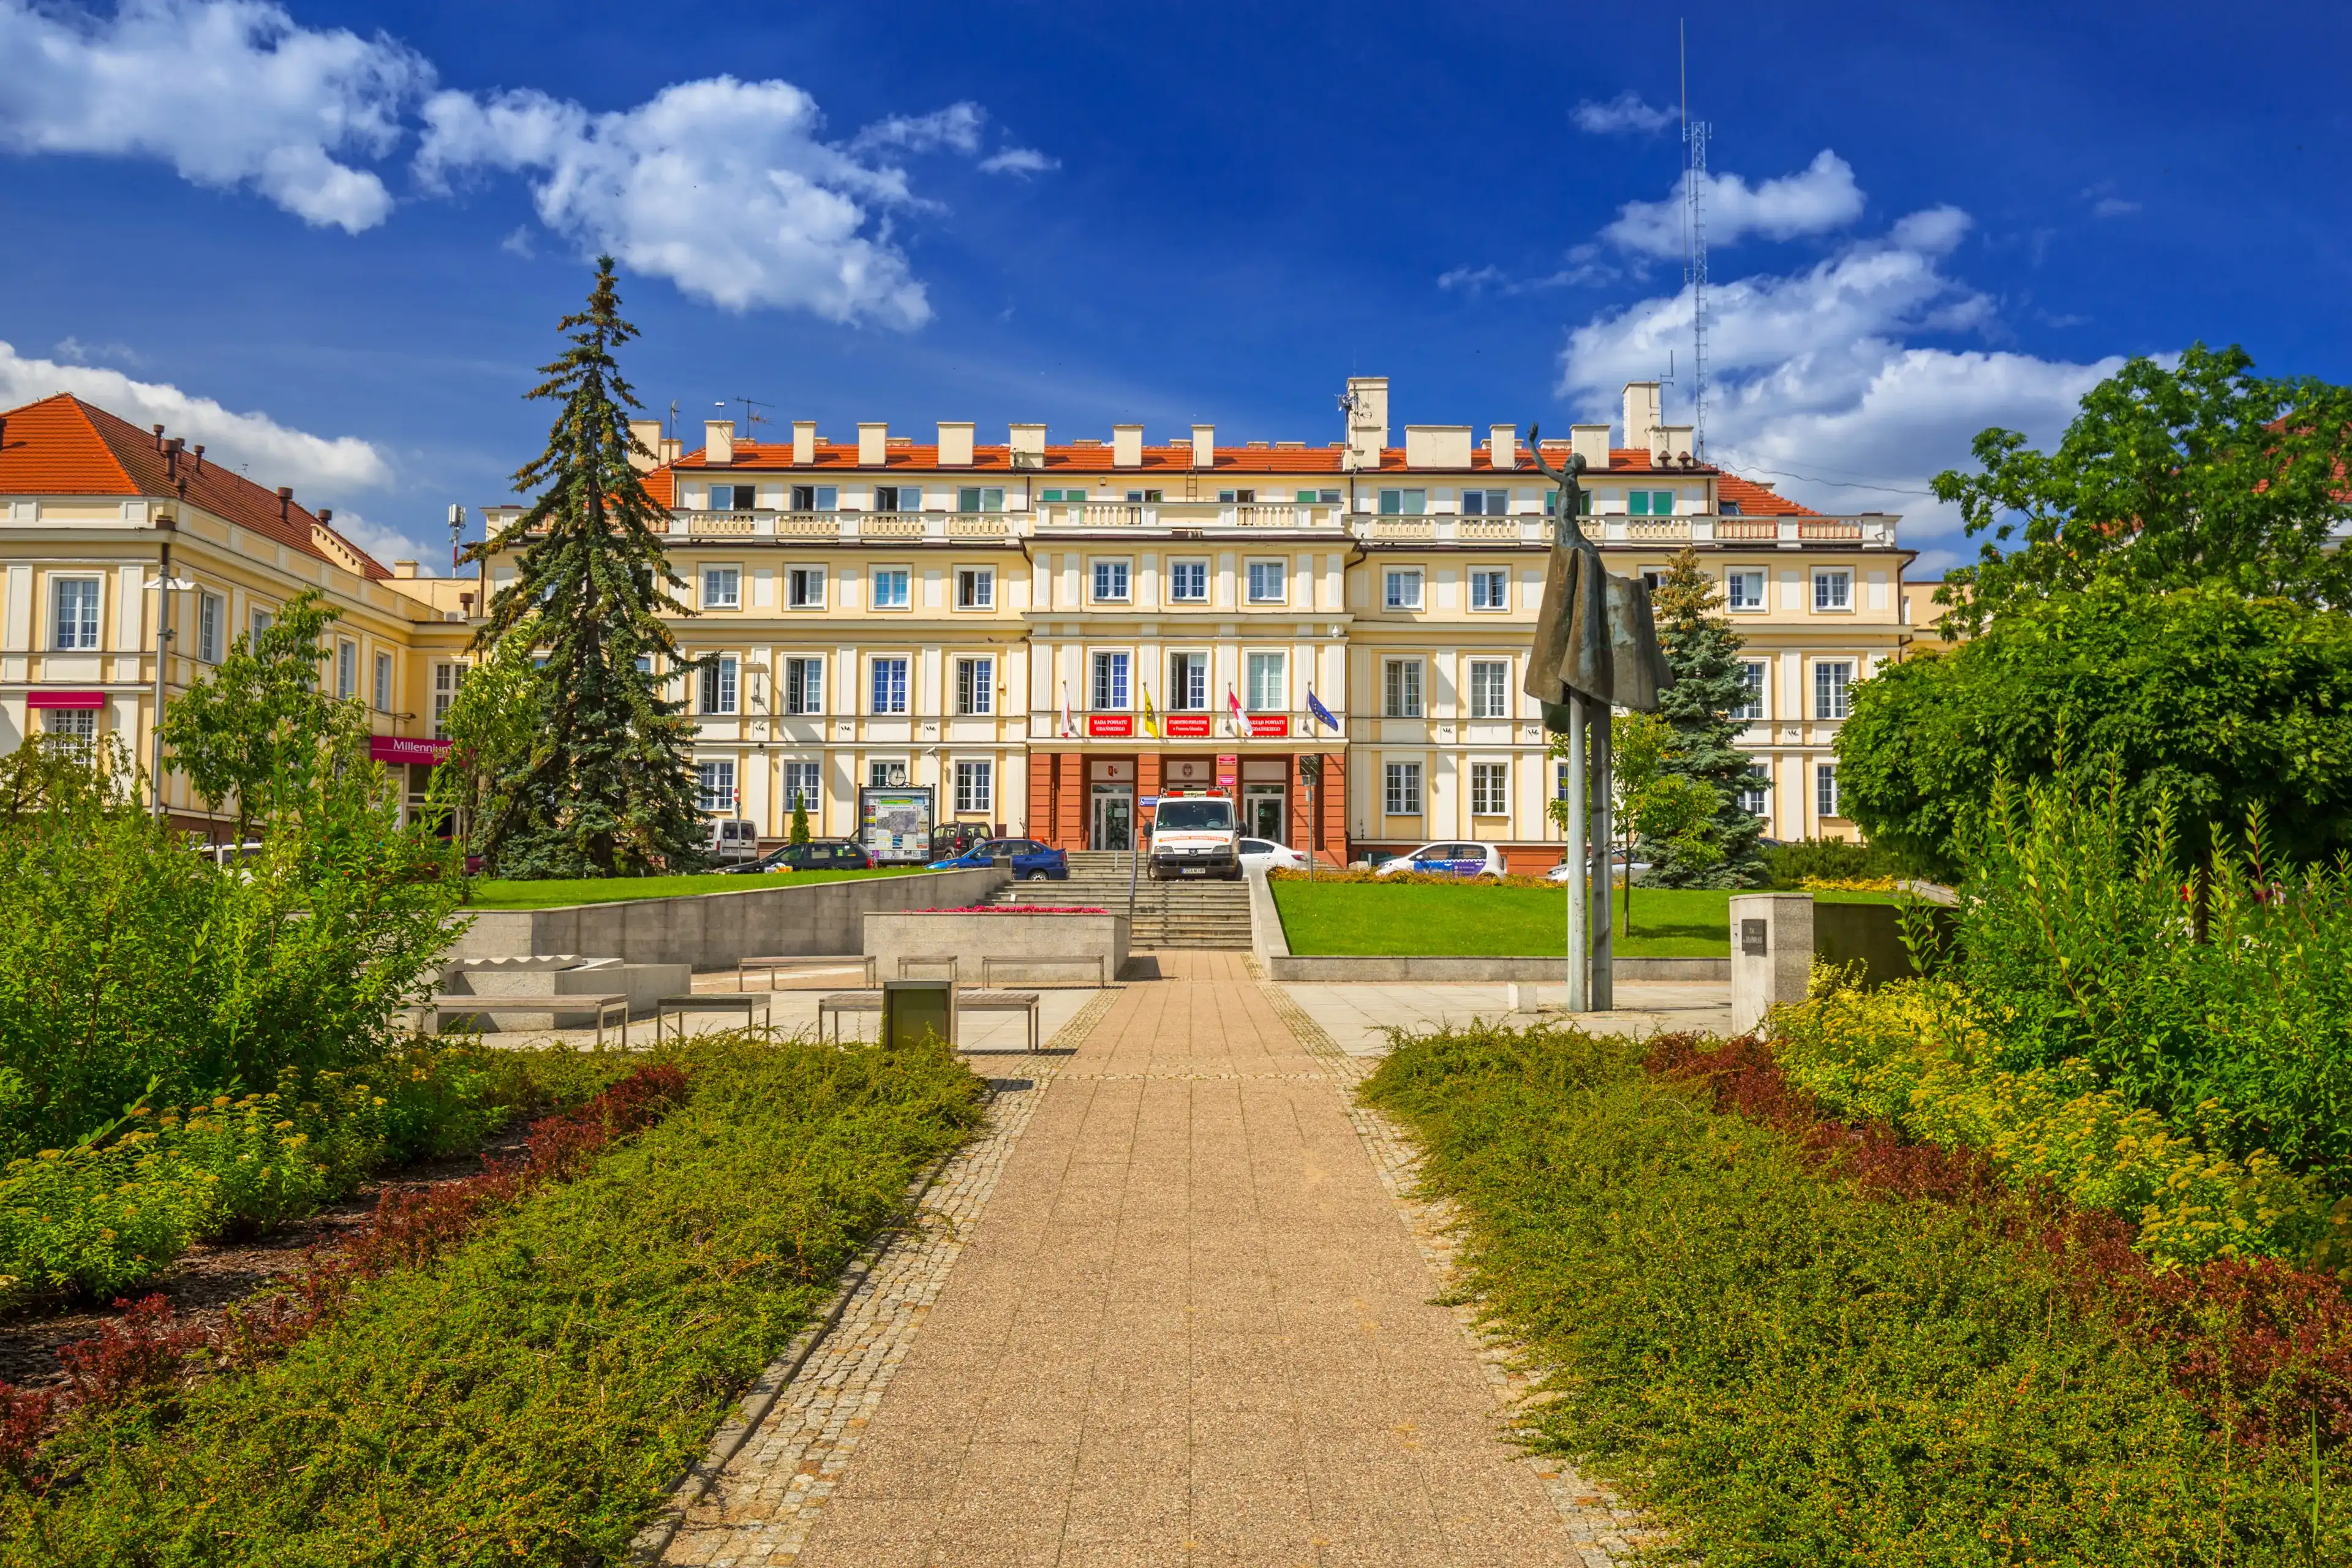 Best Pruszcz Gdański hotels. Cheap hotels in Pruszcz Gdański, Poland